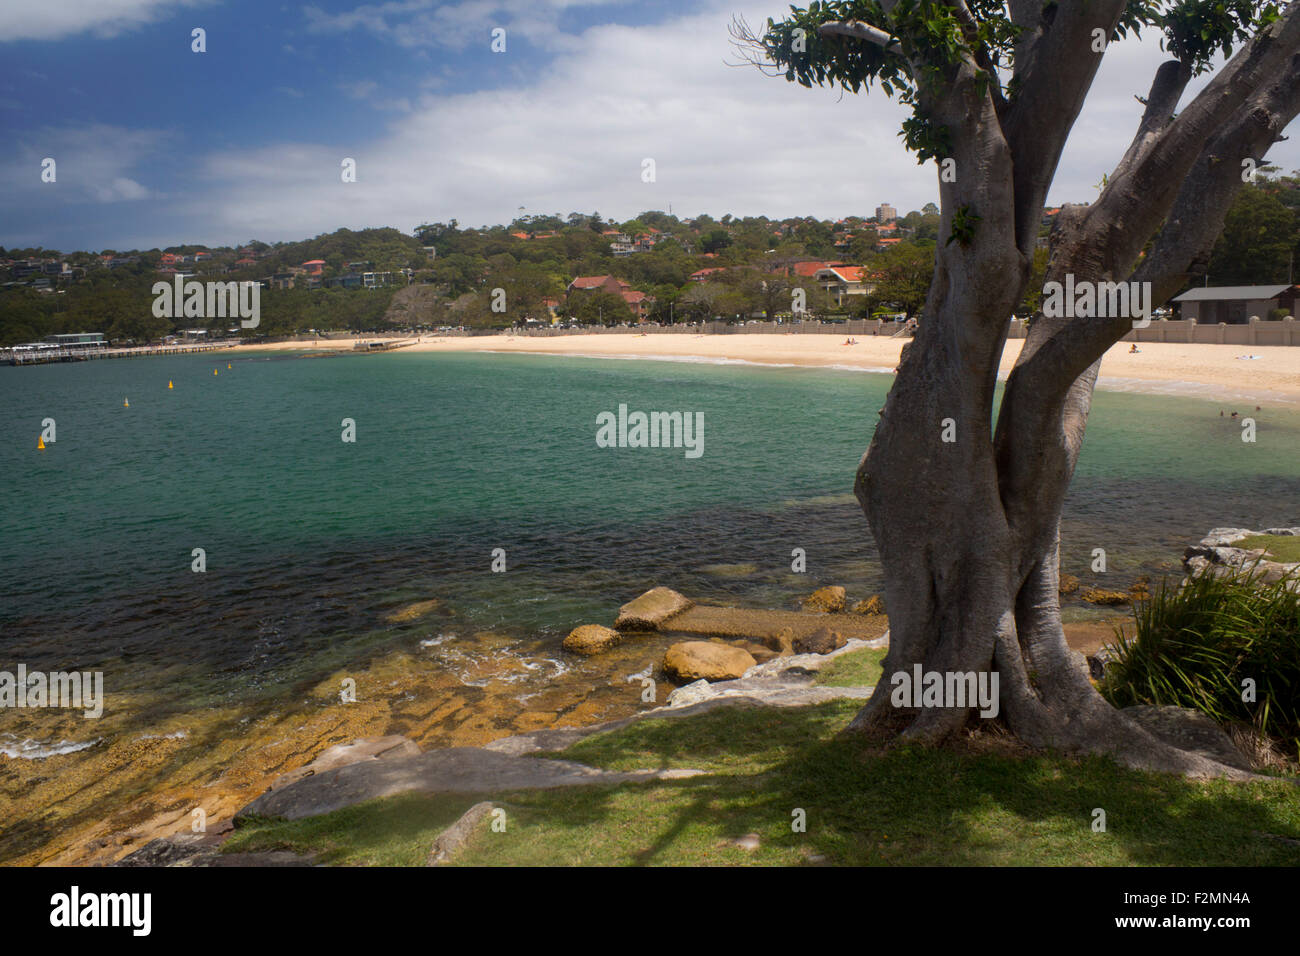 Balmoral Beach Edwards le port de Sydney Sydney NSW Australie Nouvelle Galles du Sud Banque D'Images